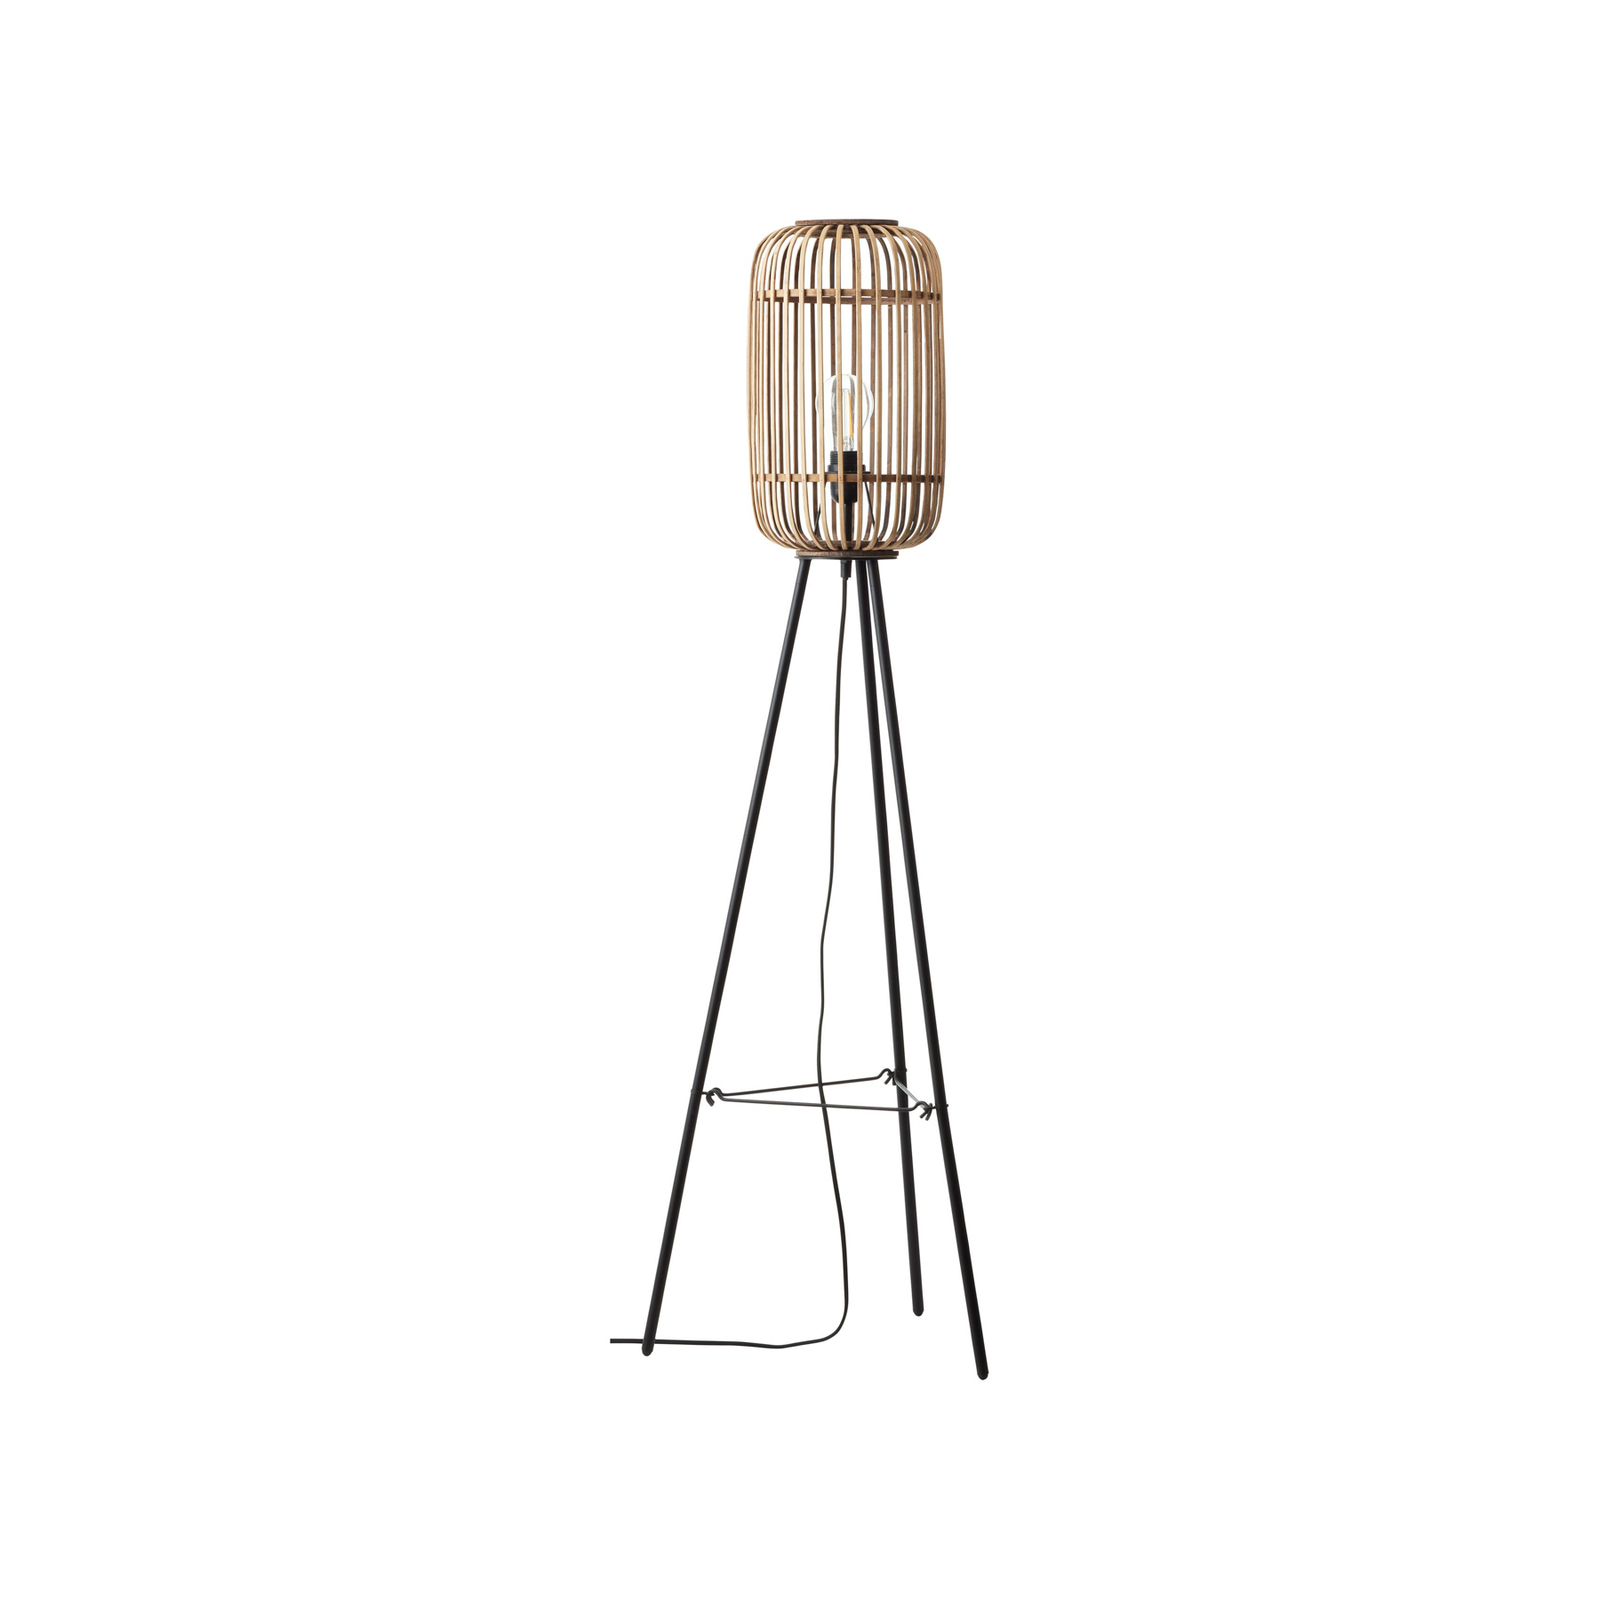 Lampe sur pied Woodrow, hauteur 130 cm, bois clair, bambou/métal